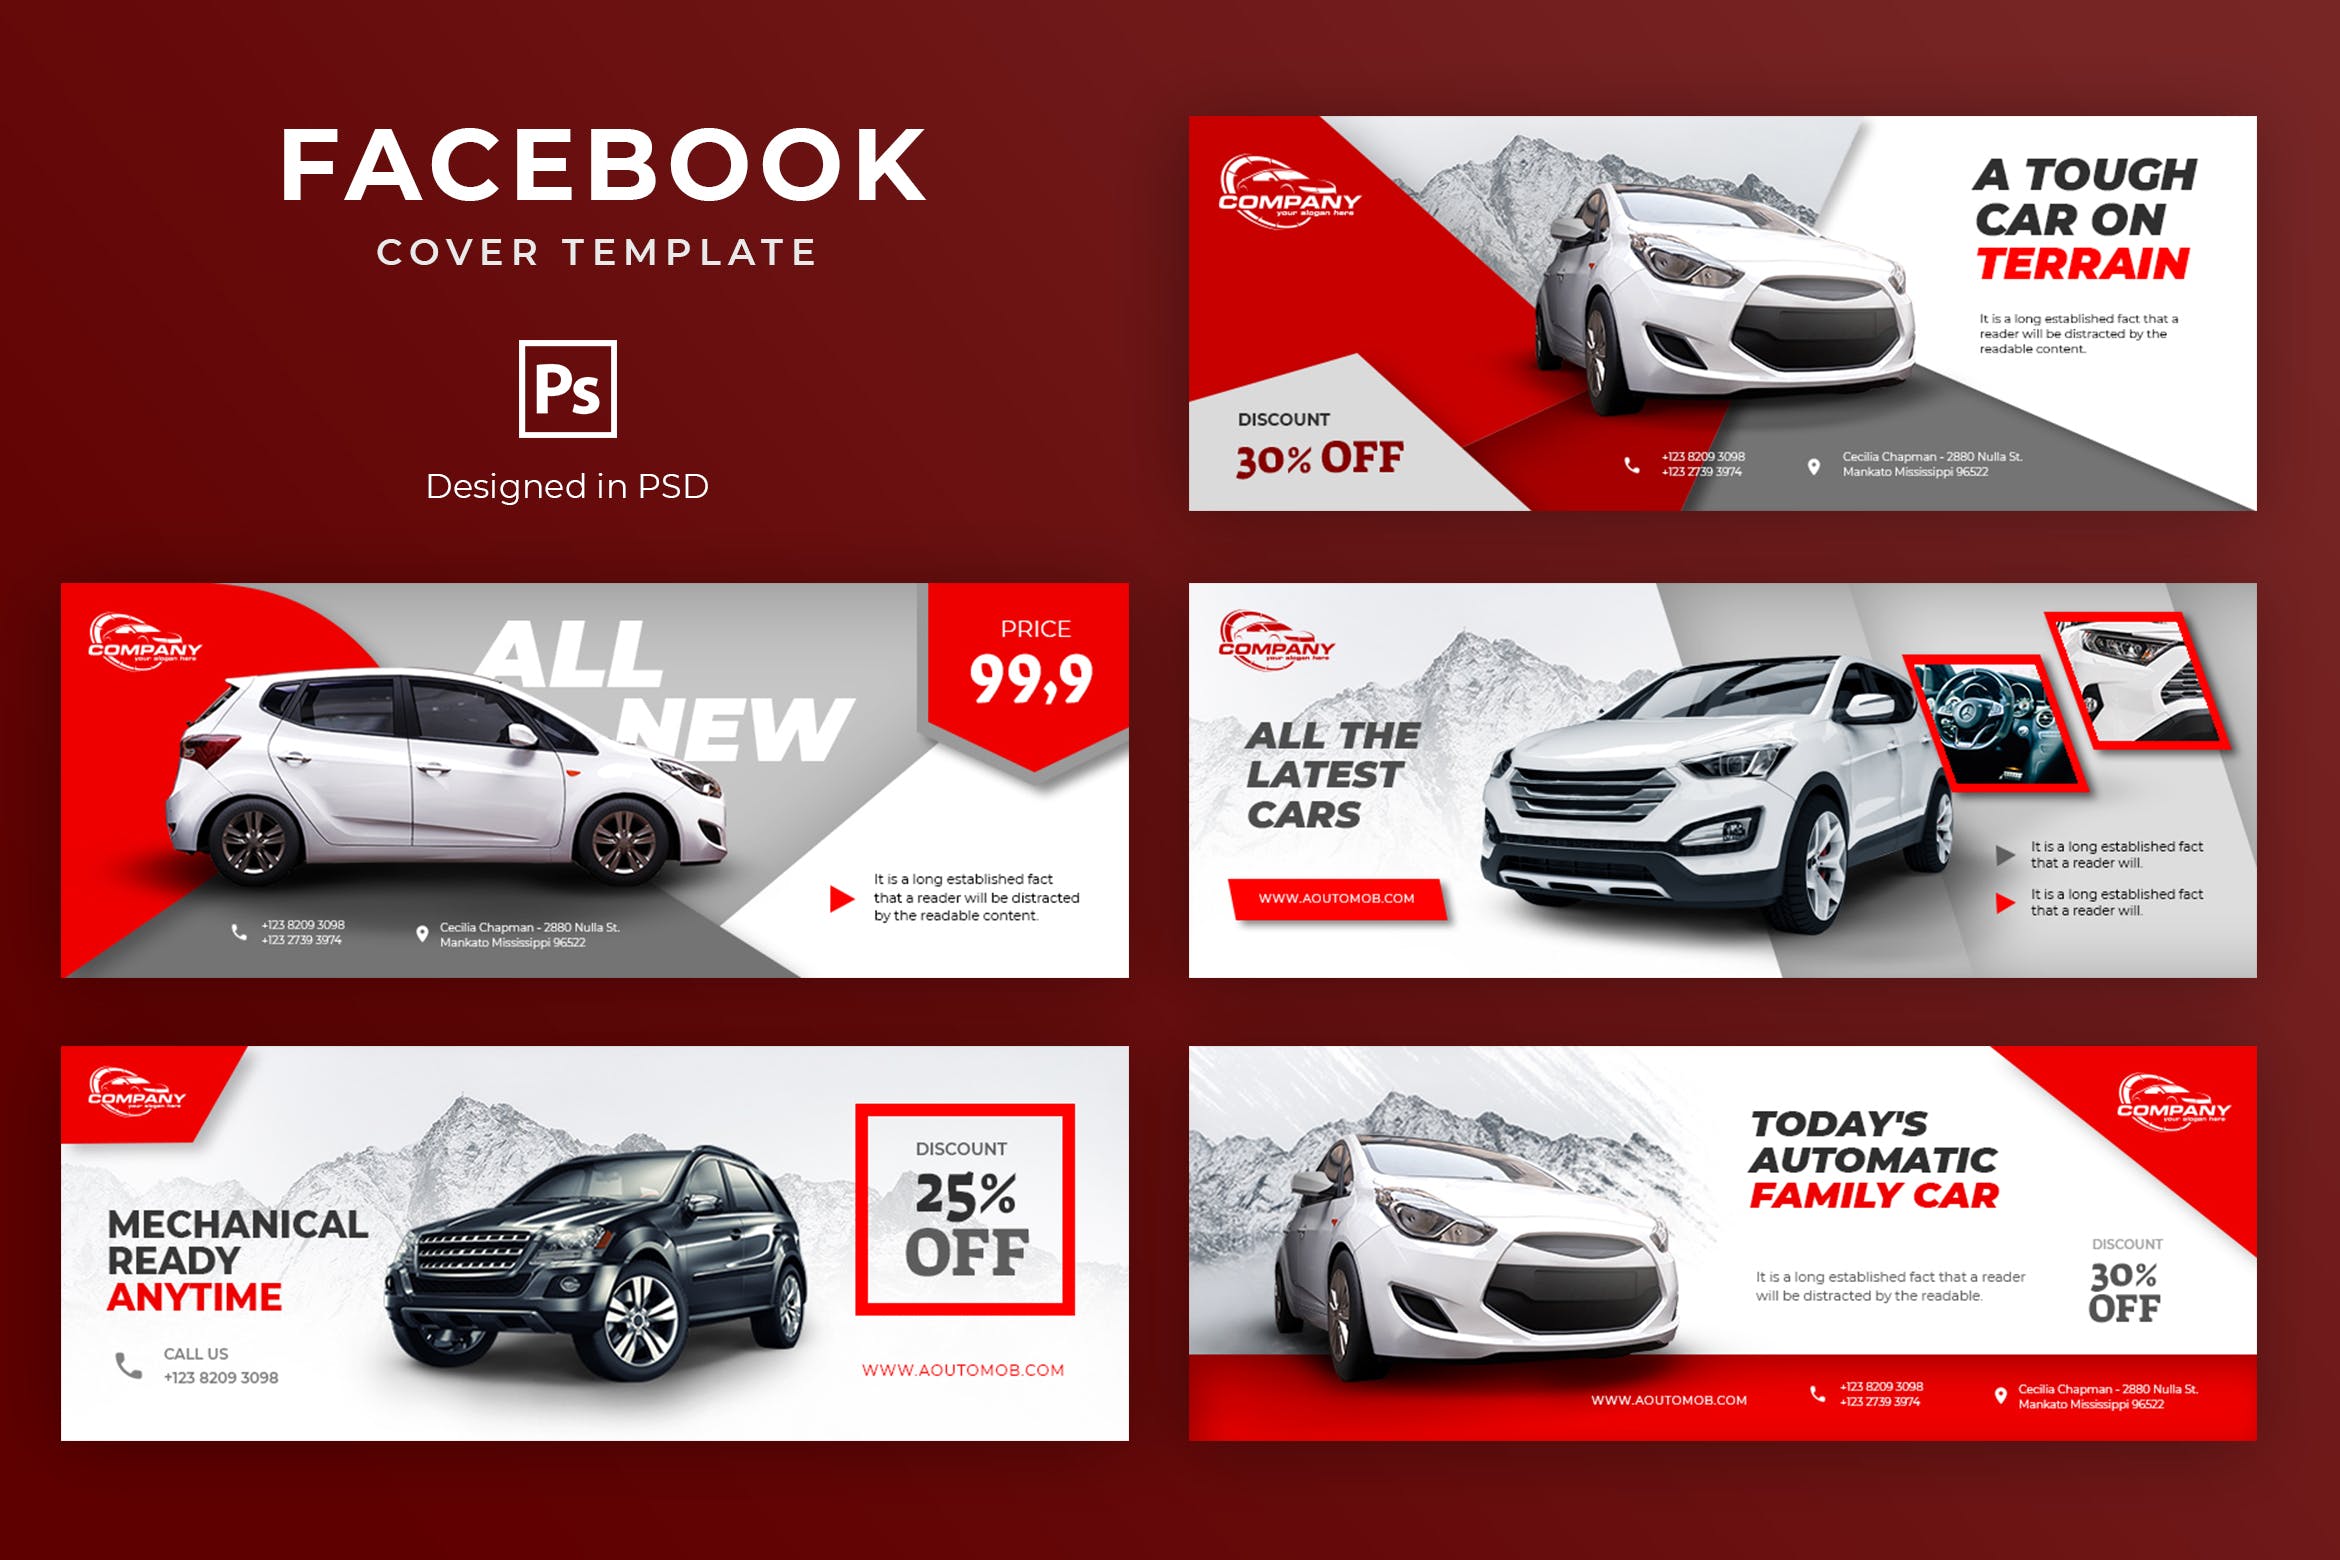 汽车品牌营销Facebook社交封面设计模板 Car Facebook Cover Template插图